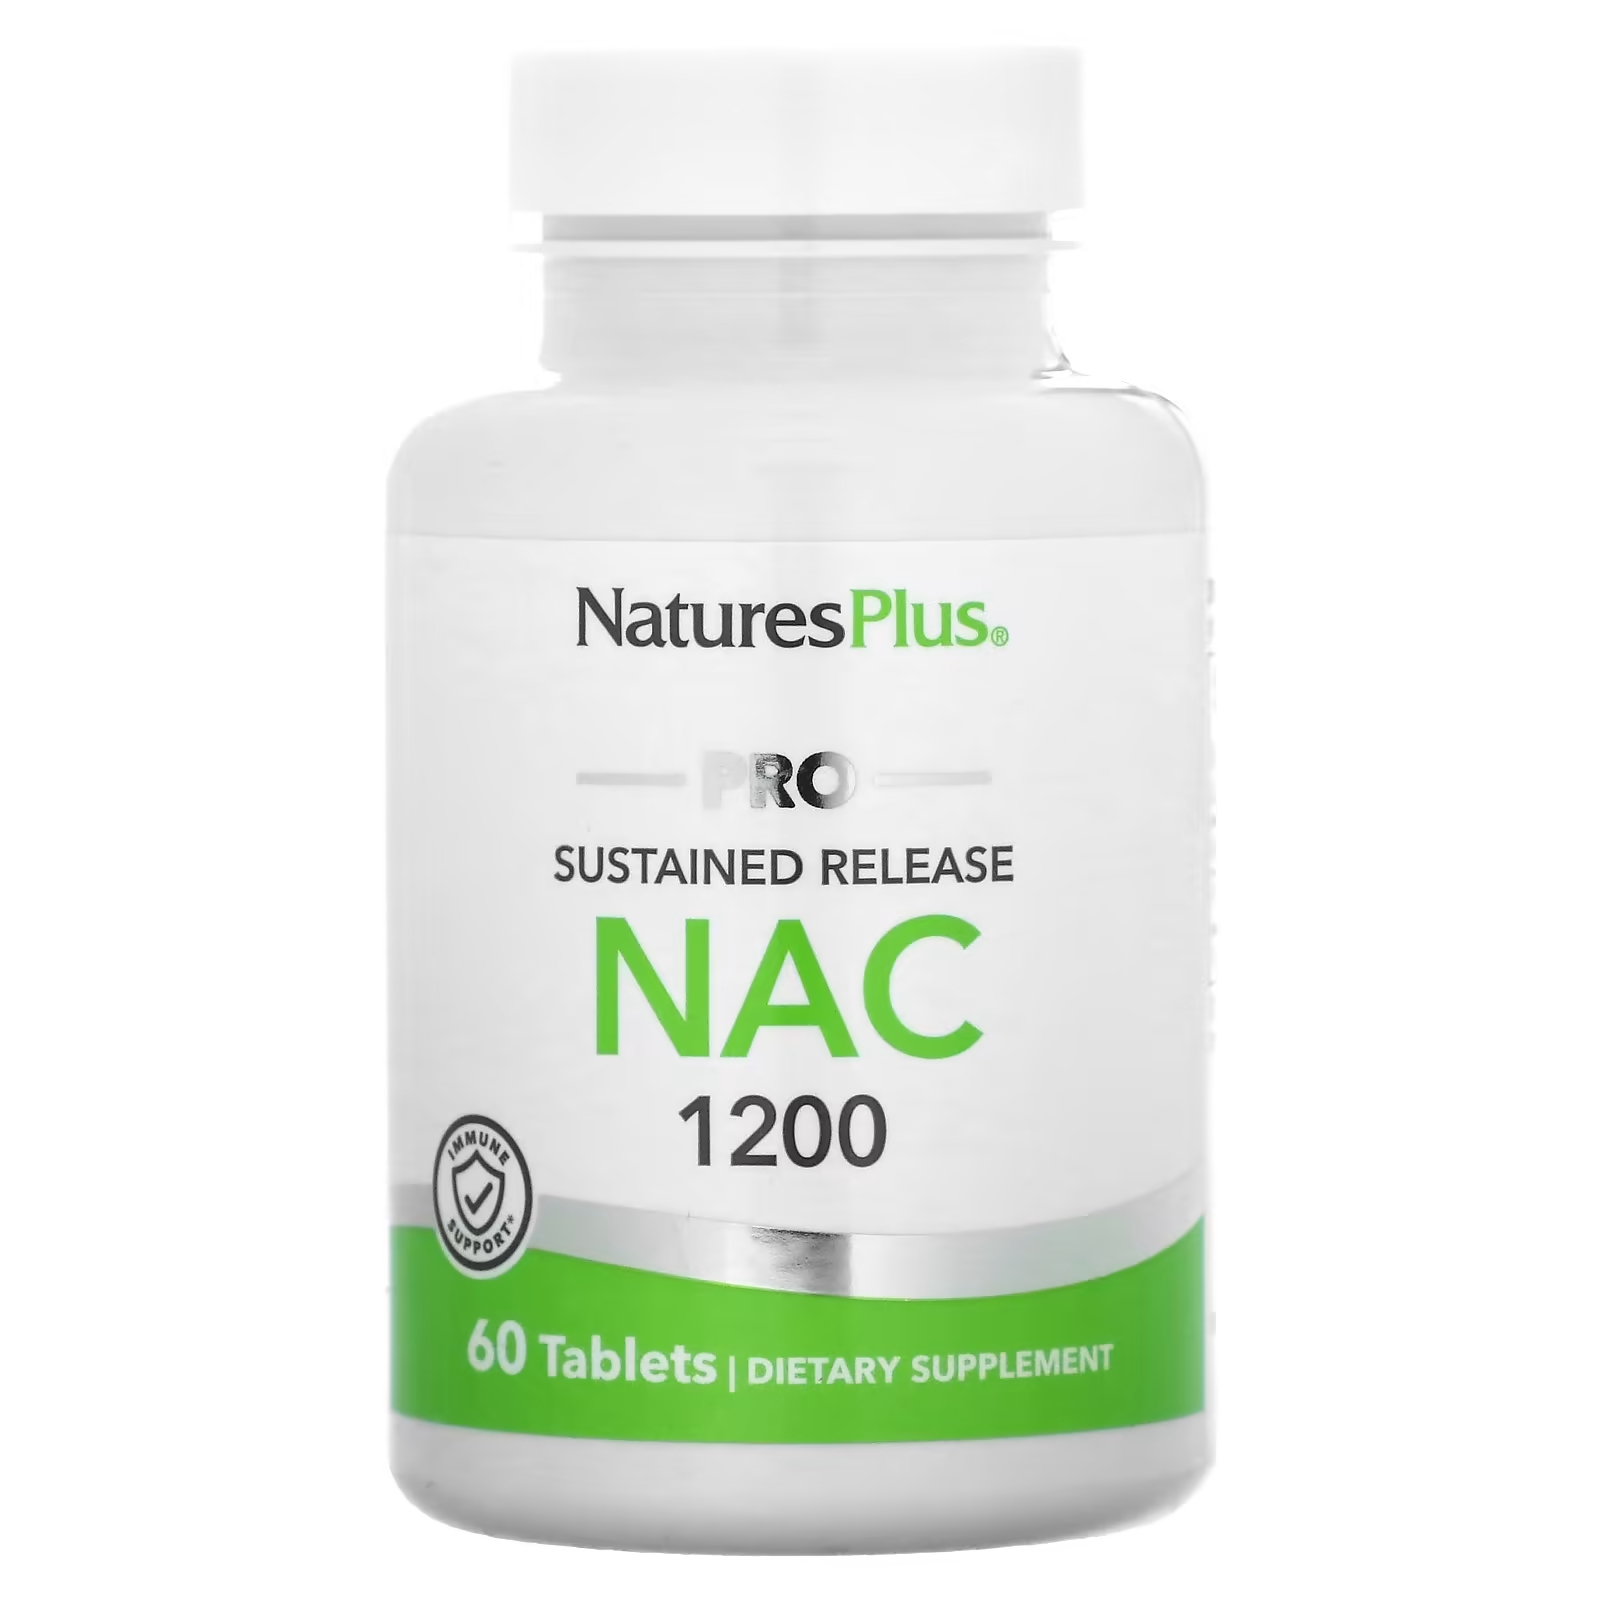 Пищевая добавка NaturesPlus Pro NAC 1200 без отдушек, 60 таблеток цена и фото